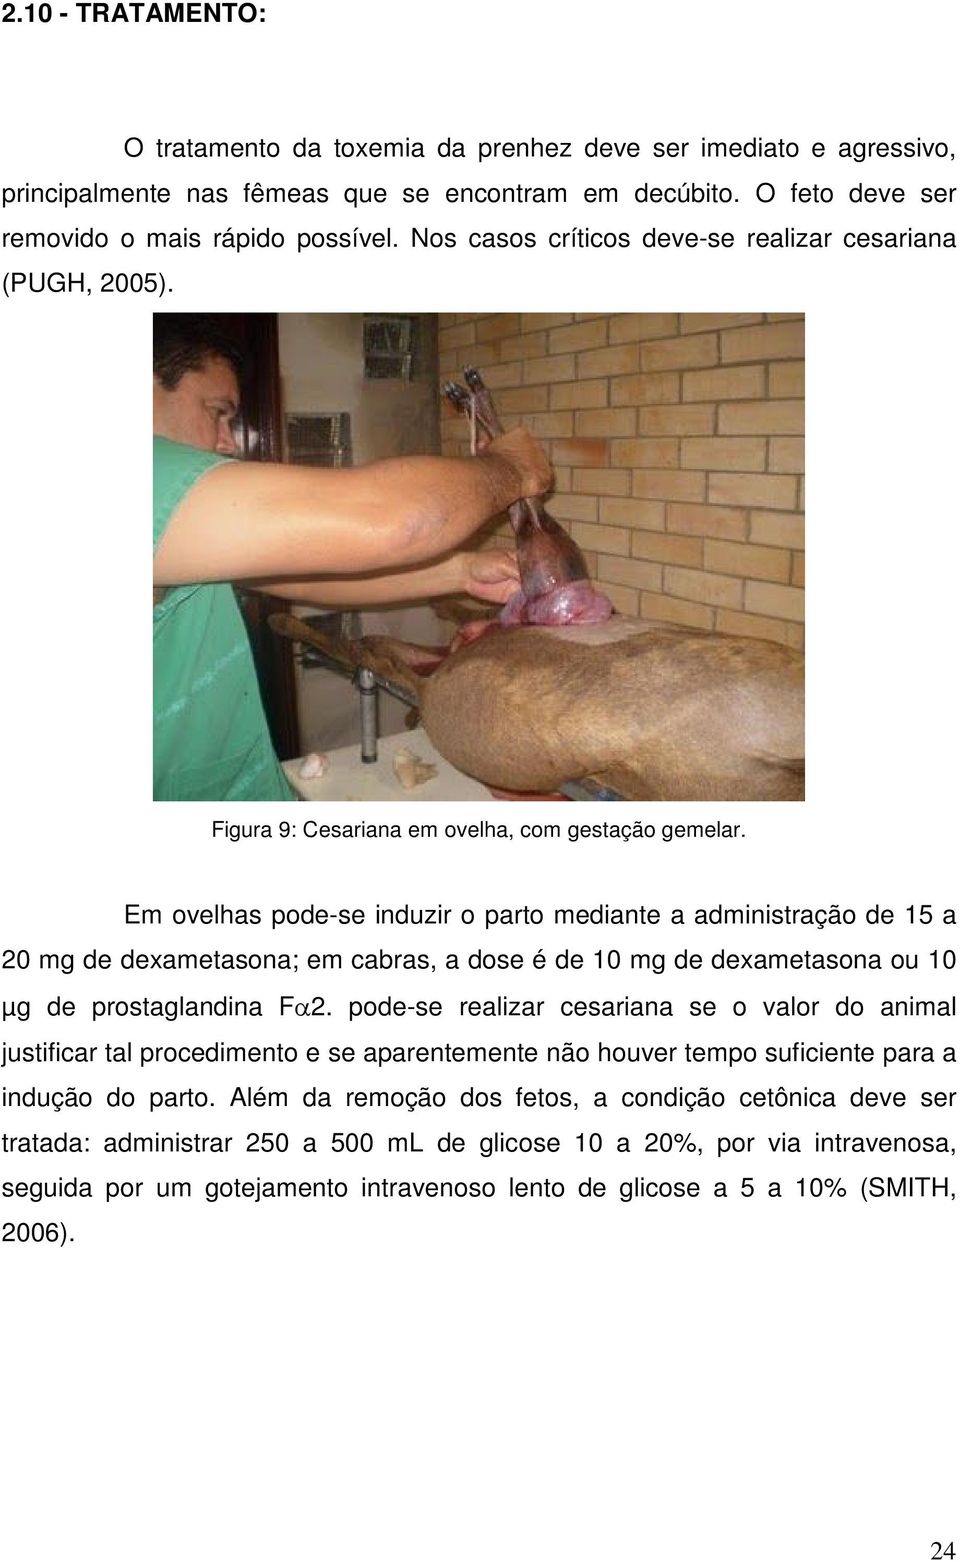 Em ovelhas pode-se induzir o parto mediante a administração de 15 a 20 mg de dexametasona; em cabras, a dose é de 10 mg de dexametasona ou 10 µg de prostaglandina Fa2.